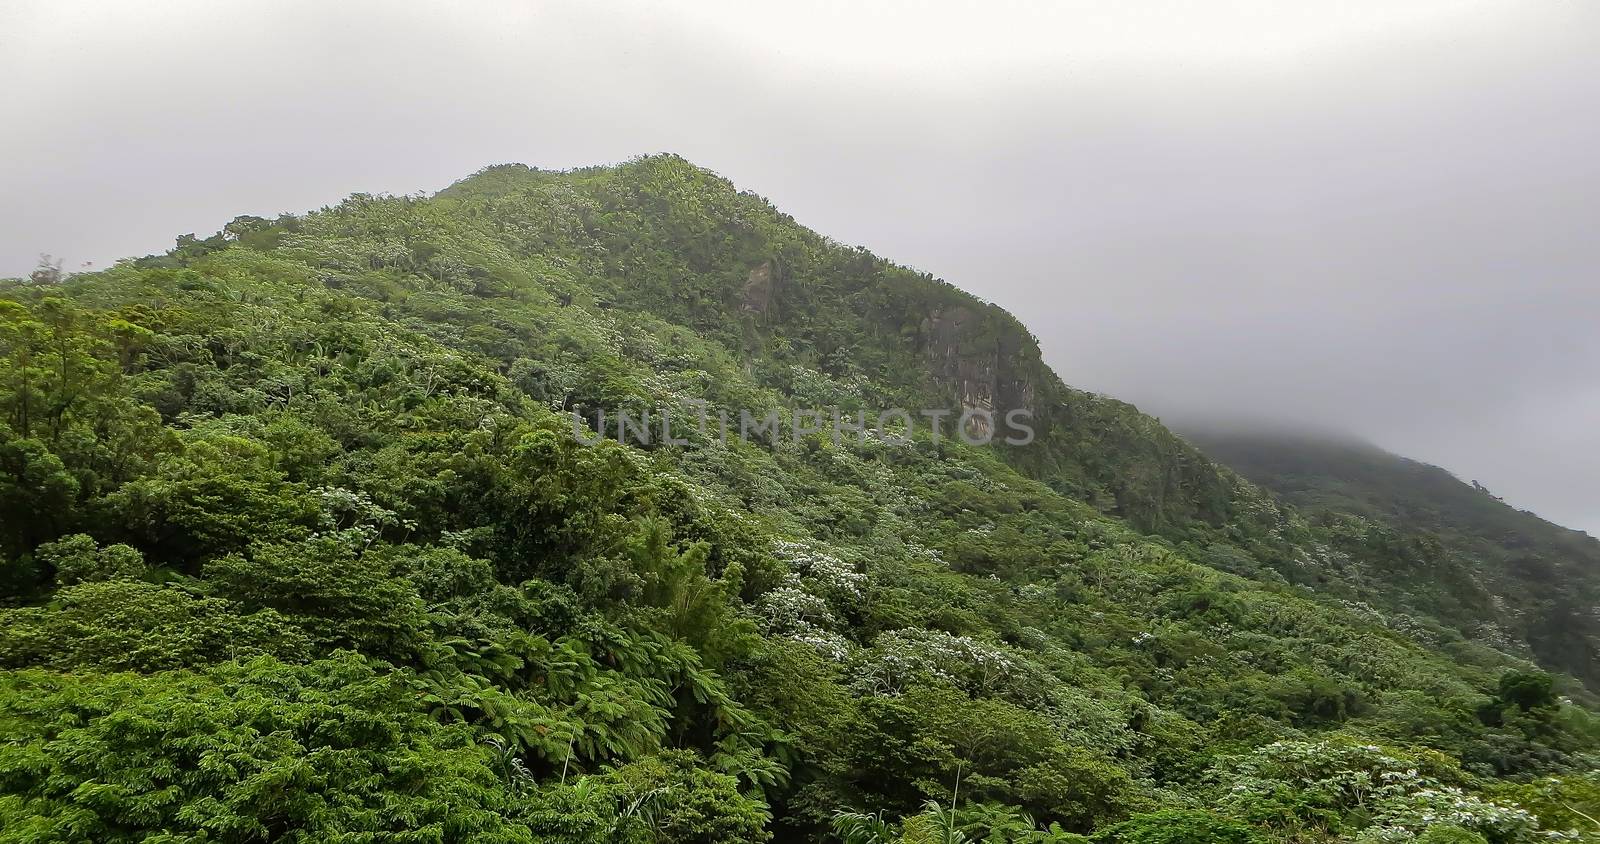 El Yunque Rainforest by teacherdad48@yahoo.com